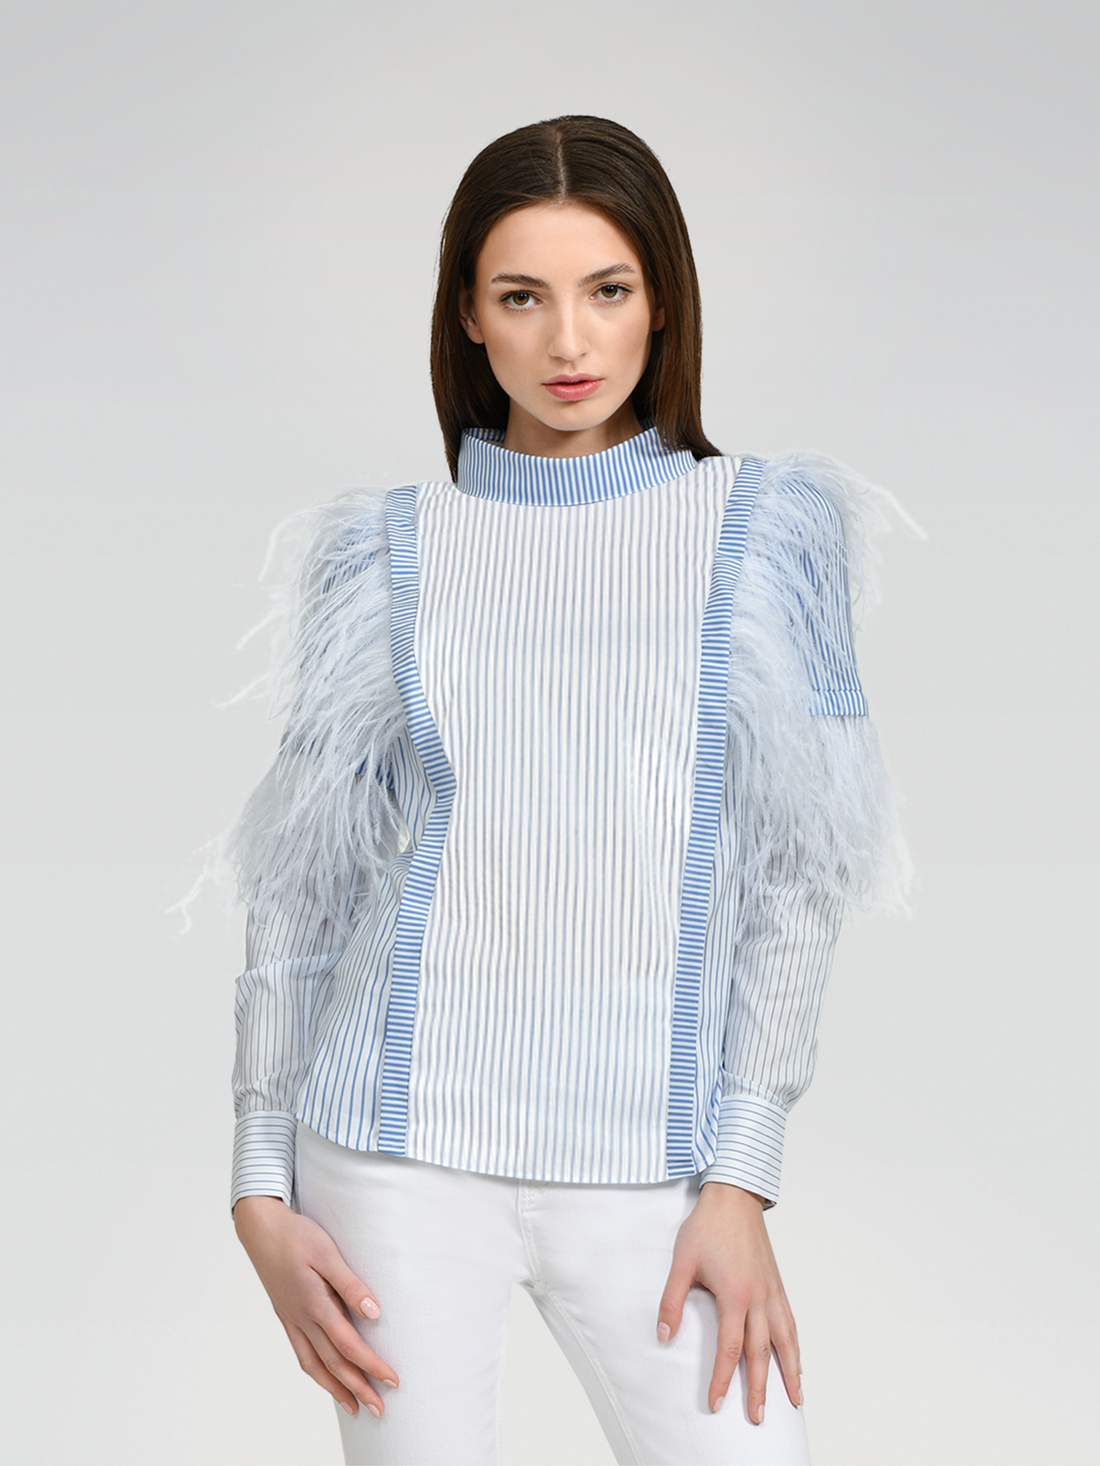 Gestreifte Bluse aus Baumwoll-Seidenmix, exklusivem Tragekomfort und abnehmbaren Federn an der Schulter- und Armpartie